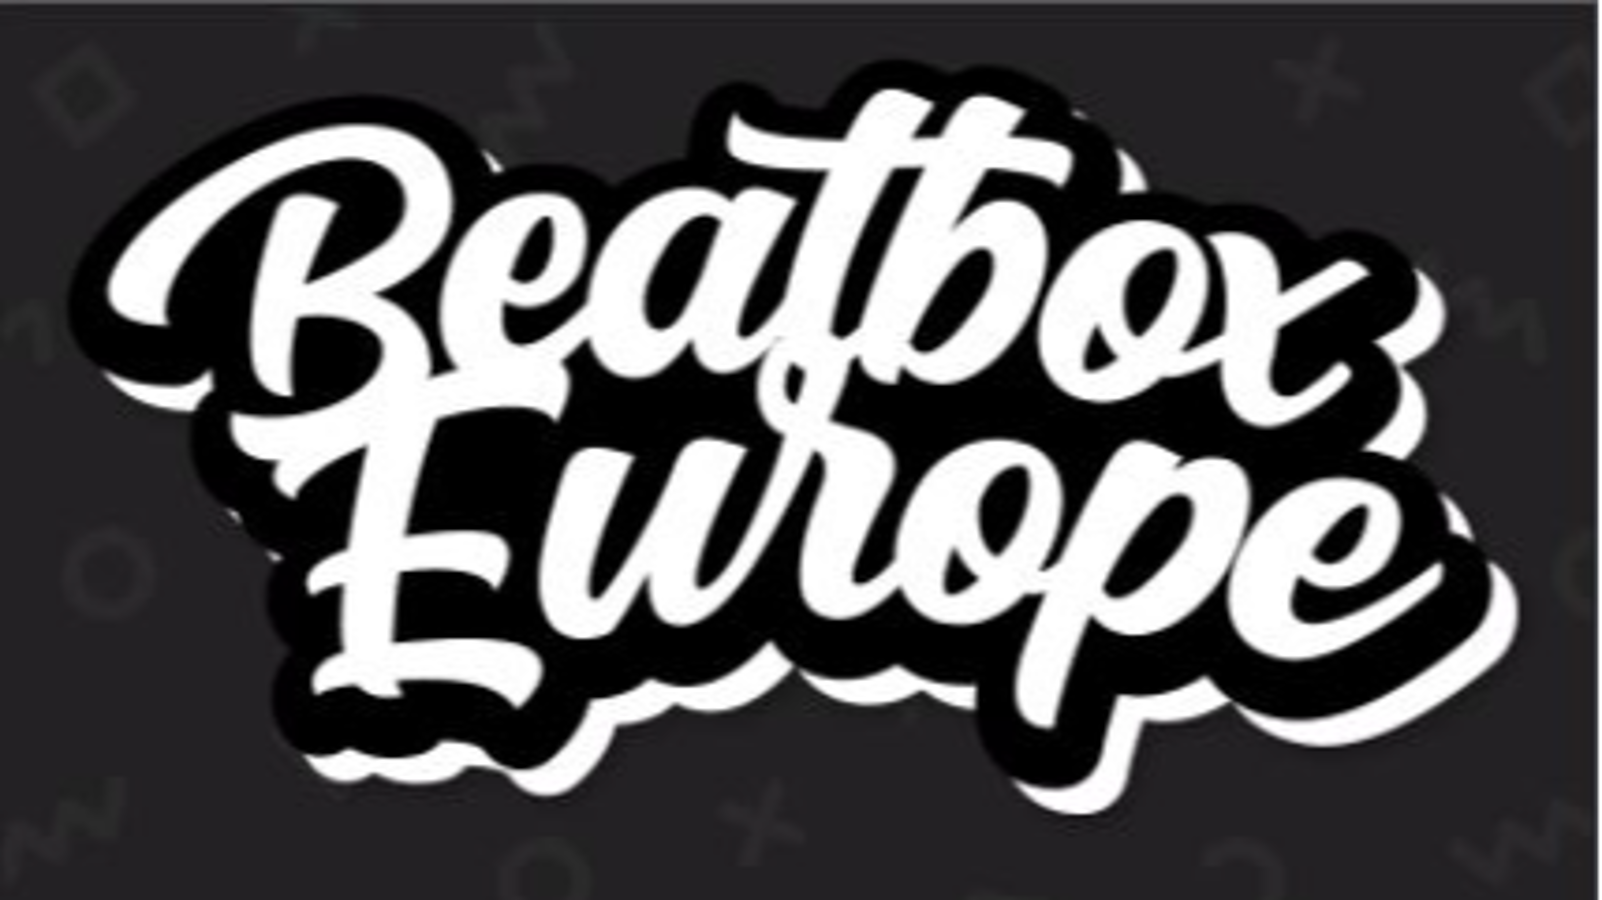 Beatbox Europe